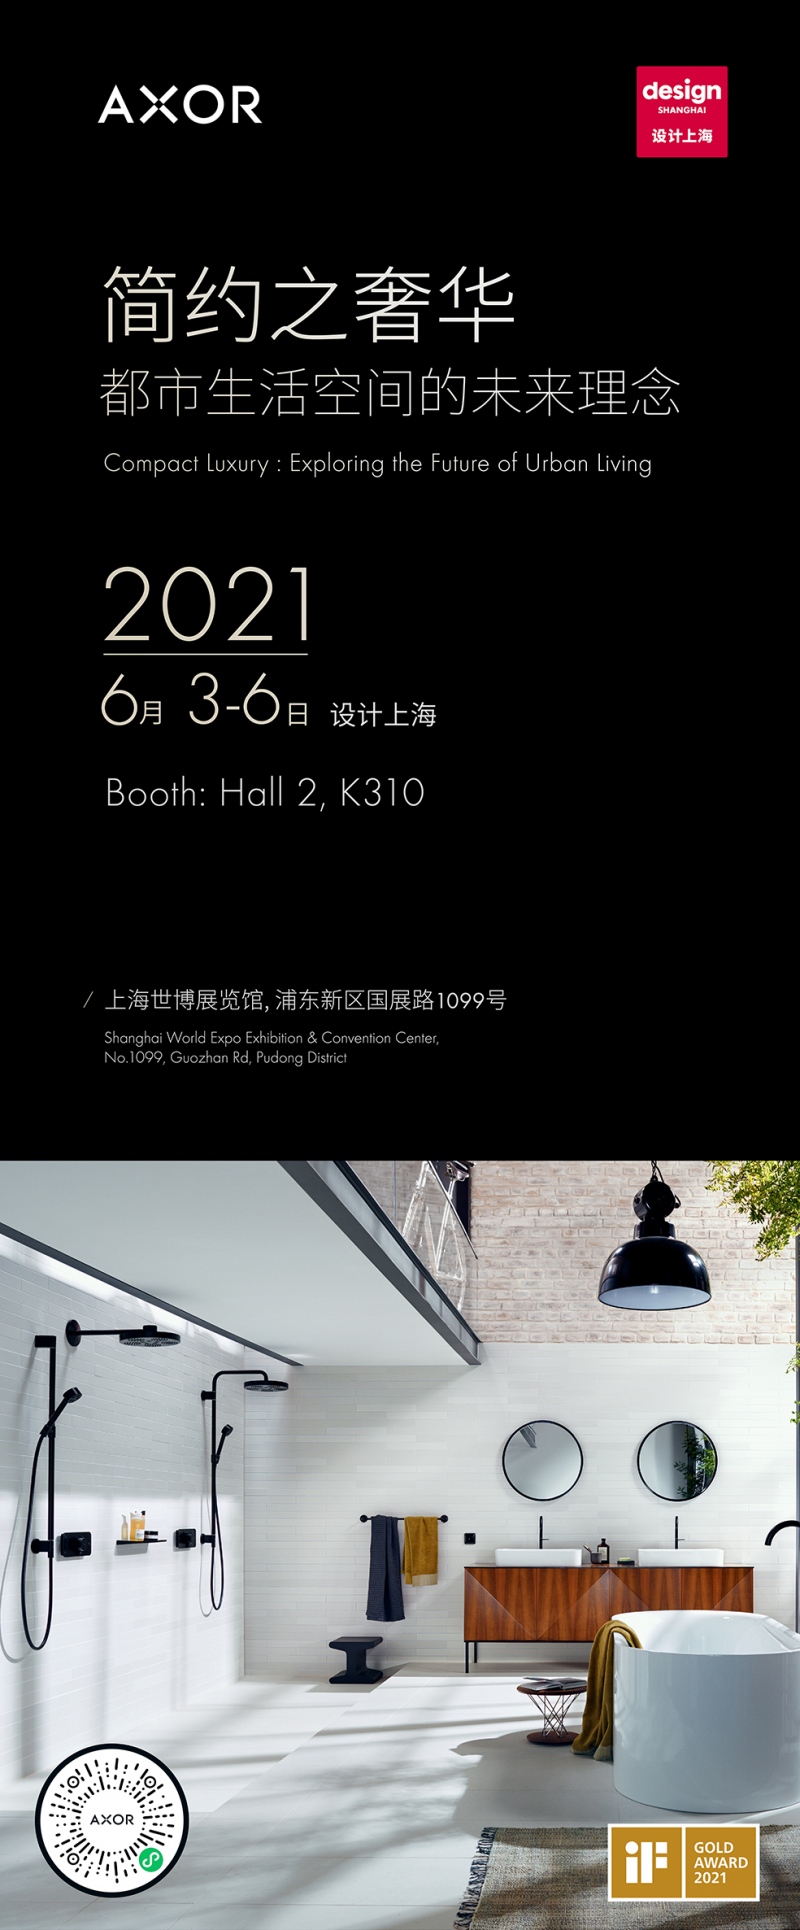 设计上海2021即将开展AXOR雅生演绎简约奢华新风